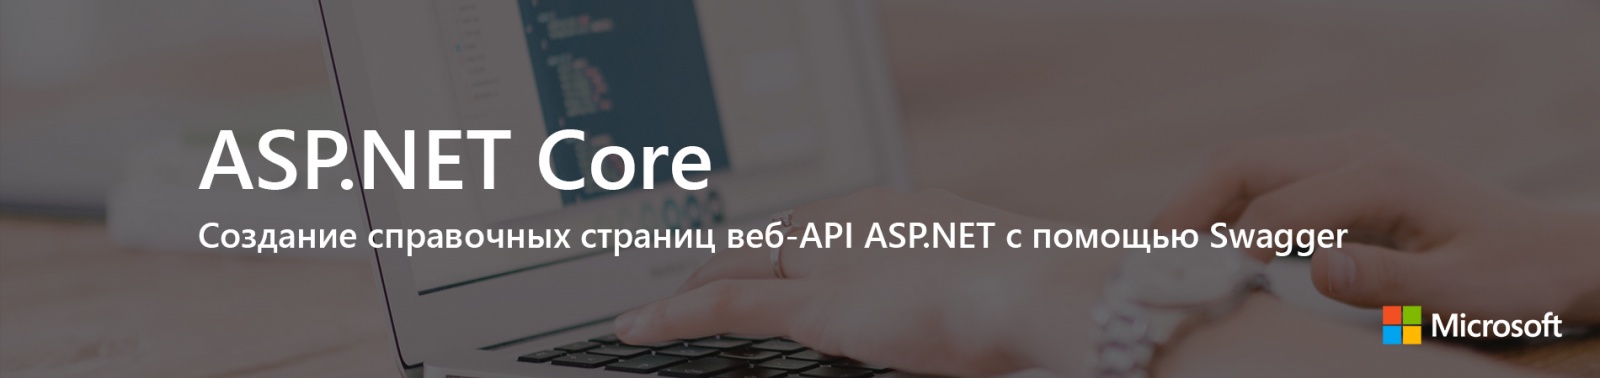 ASP.NET Core: Создание справочных страниц веб-API ASP.NET с помощью Swagger - 1